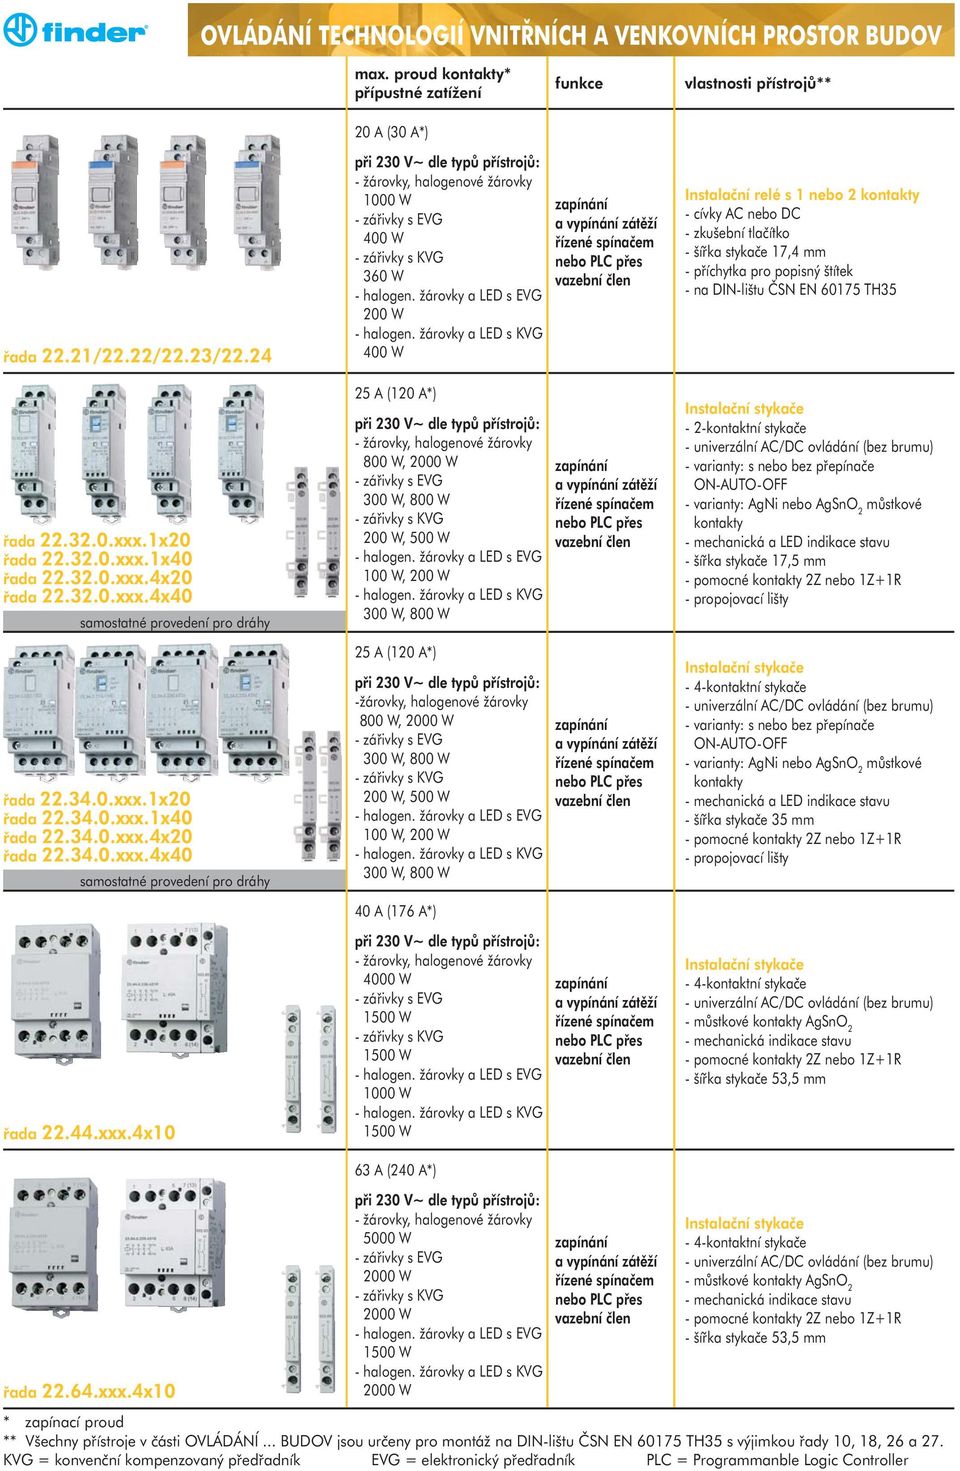 žárovky a LED s EVG 200 W - halogen. žárovky a LED s KVG 400 W 25 A (120 A*) při 230 V~ dle typů přístrojů: 800 W, 2000 W 300 W, 800 W 200 W, 500 W - halogen.